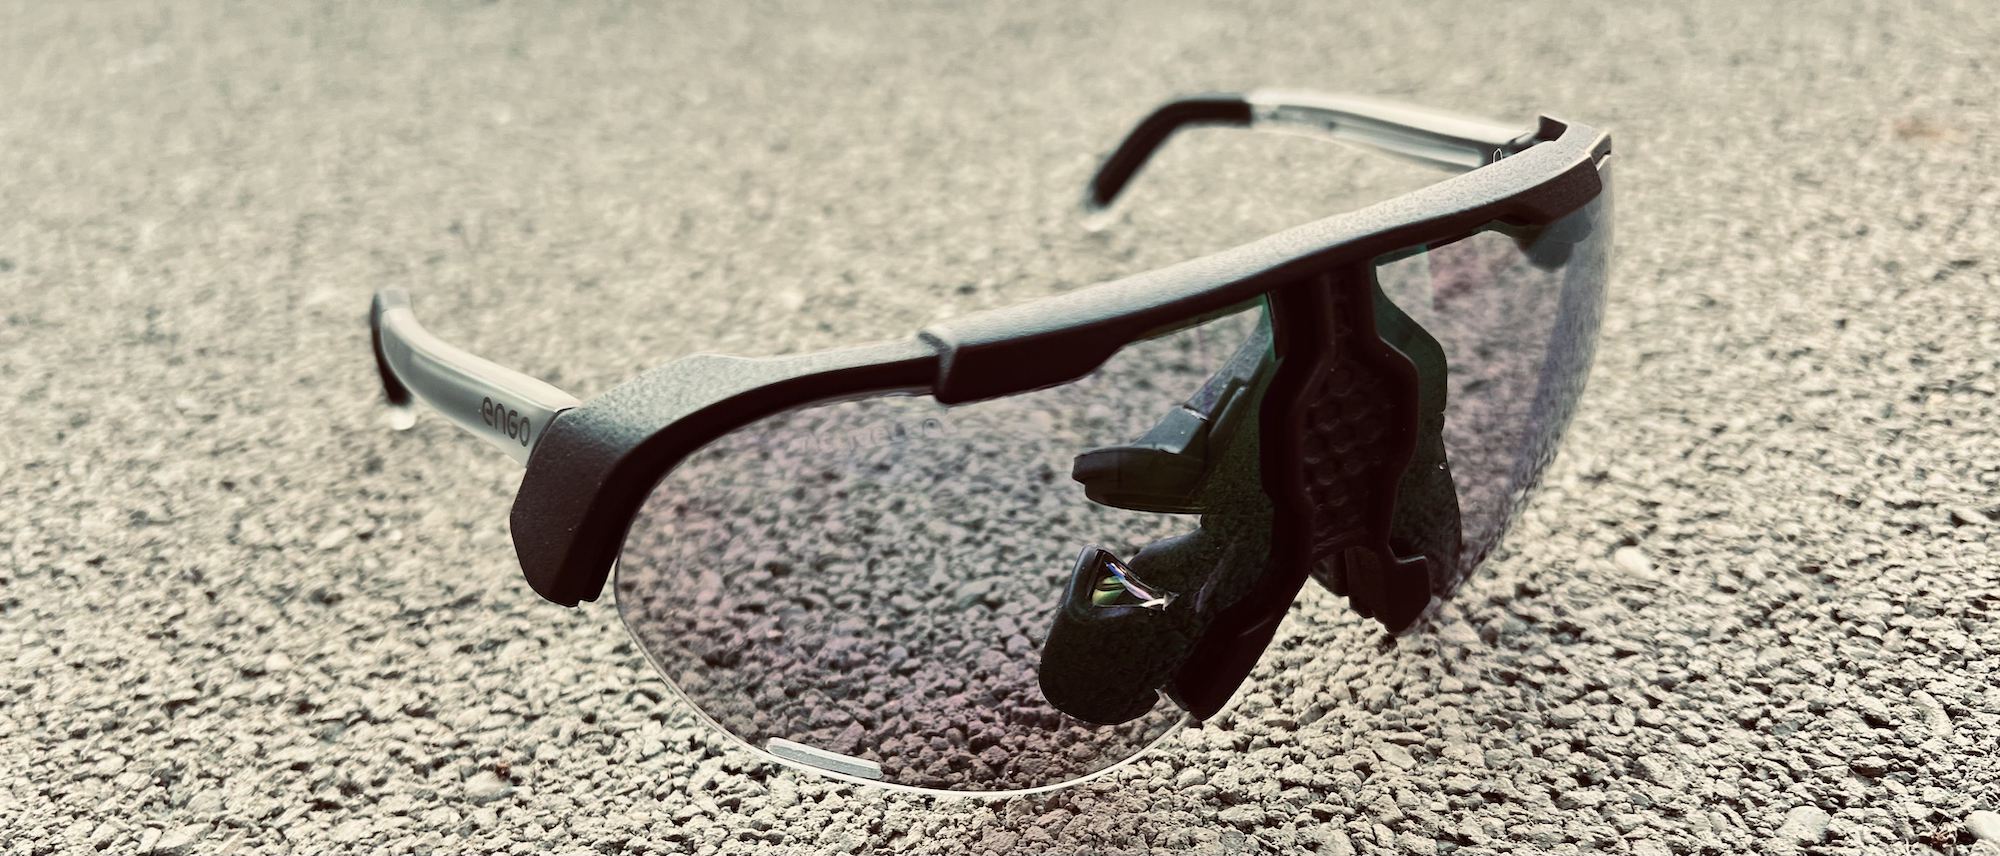 Test lunettes ENGO : gadget ou outil d'entraînement ? @Opentri